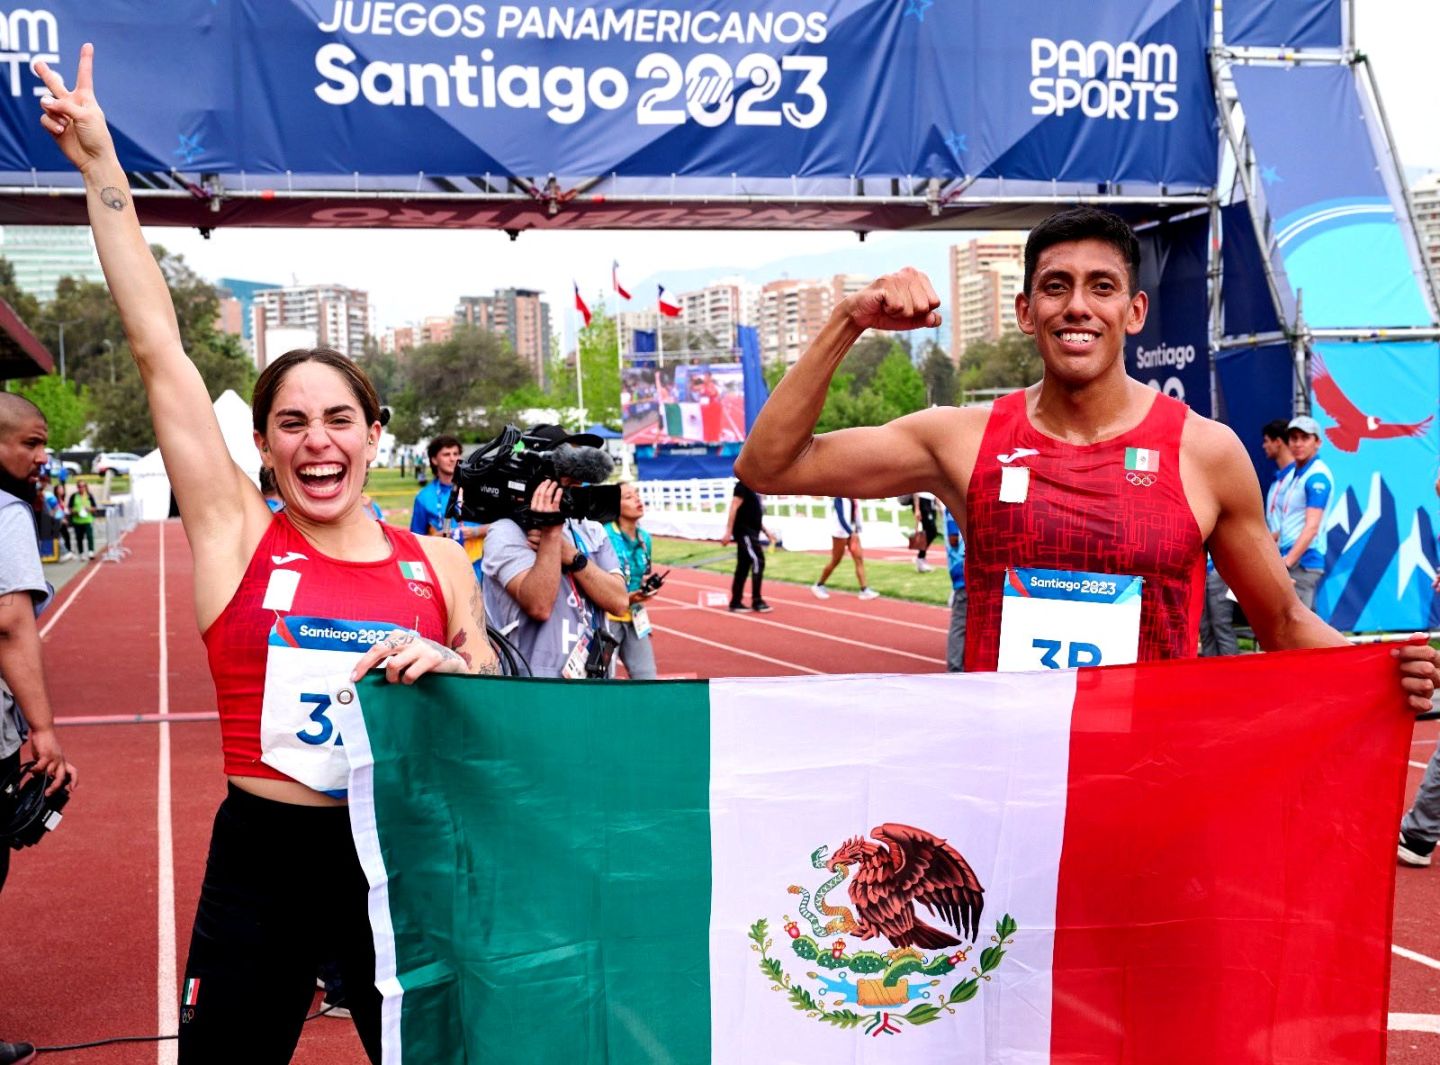 La delegación mexiquense logra 13 medallas en los Juegos Panamericanos de Santiago 2023